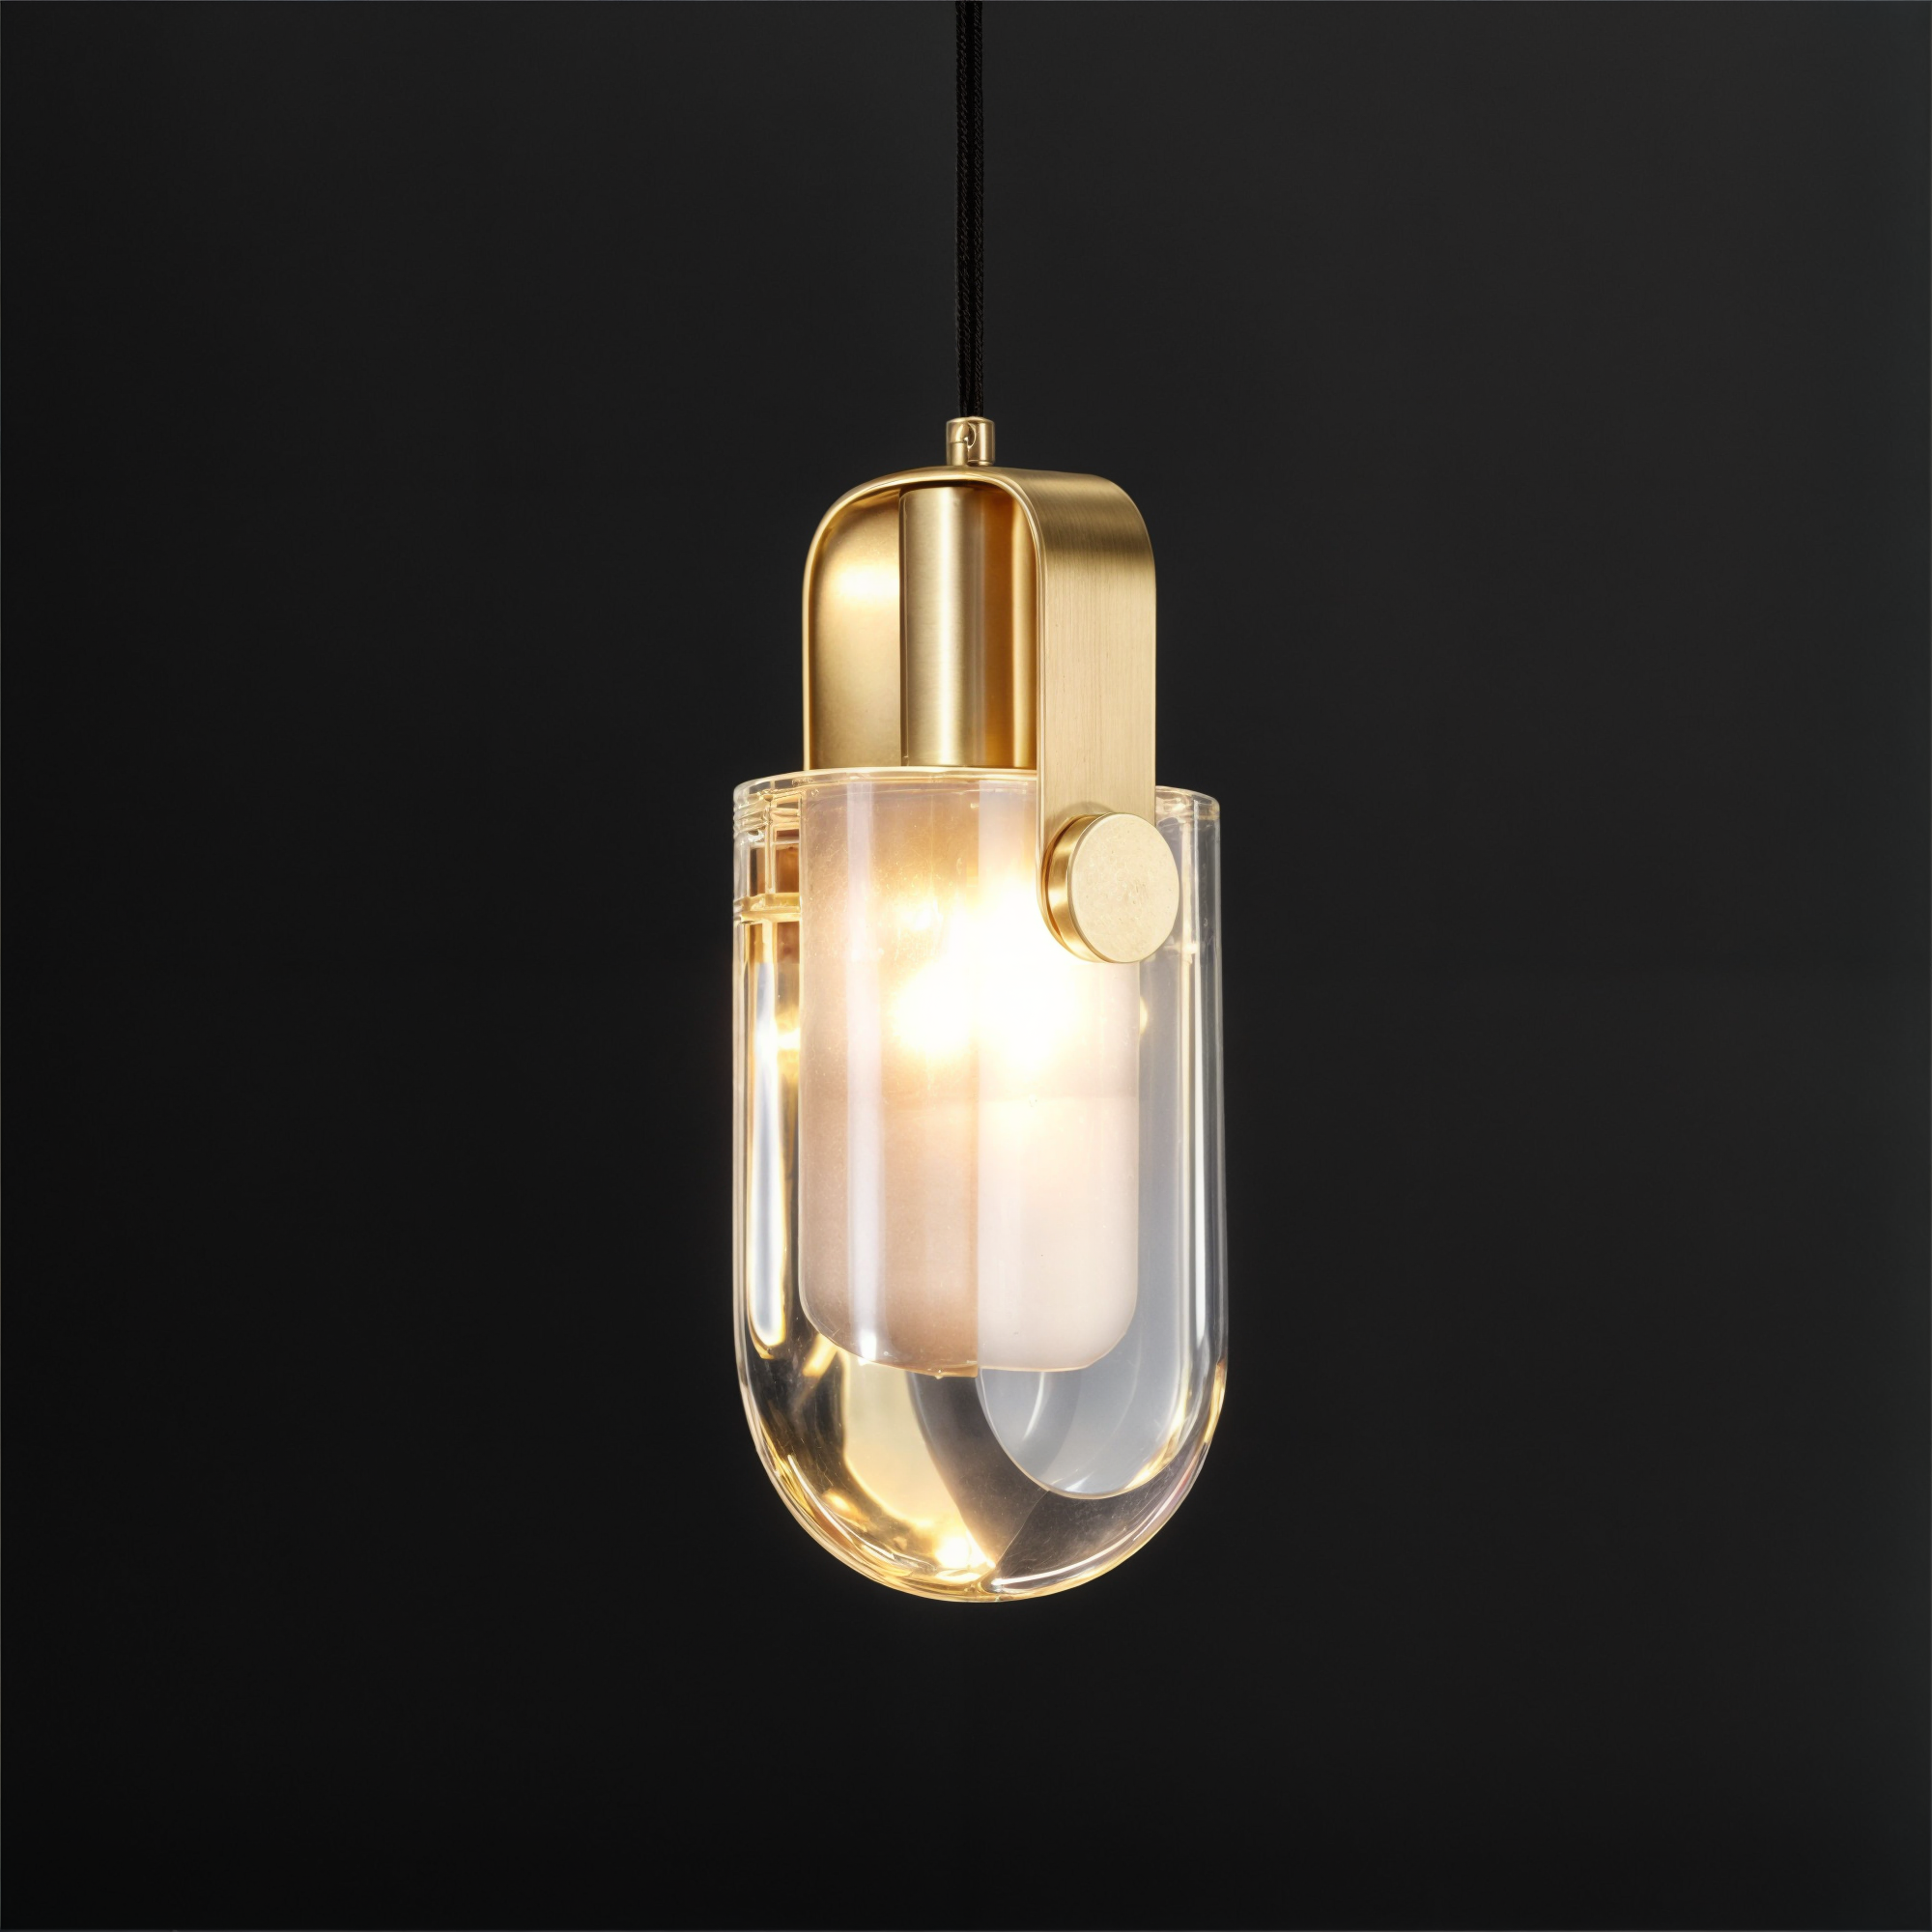 Moderne Gold Oval Crystal Pendelleuchte - Kupfer & Glas/Kristall Kronleuchter für Wohnzimmer, Schlafzimmer, Küche - LED-Lampen enthalten, 3 leuchtende Farben (Weiß, Warm, Neutral)